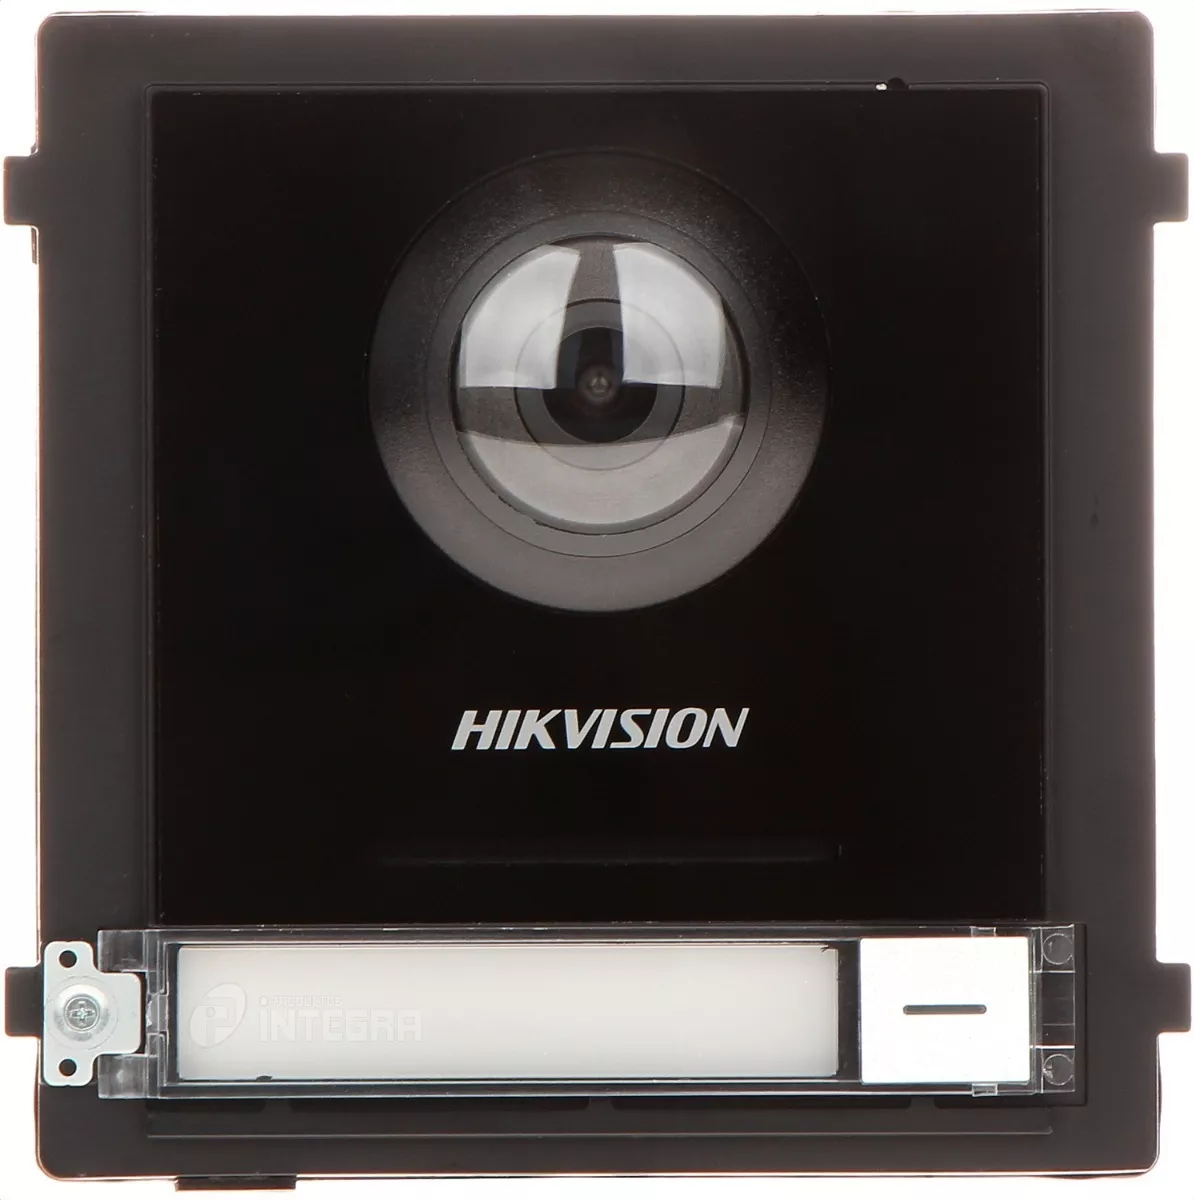 Primera imagen para búsqueda de video portero hikvision